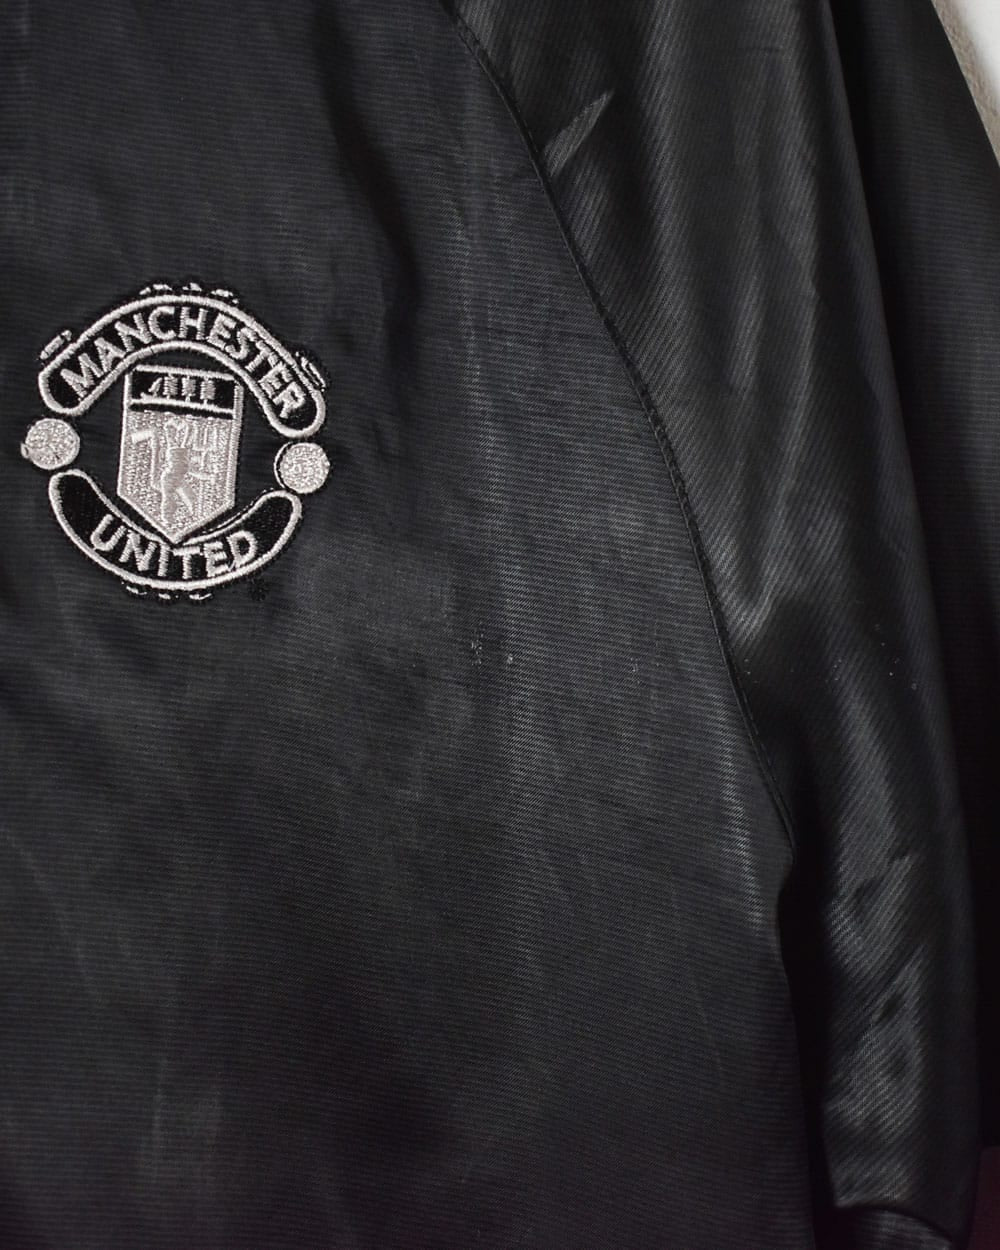 Black Nike Manchester United Training Windbreaker Jacket - XX-Large